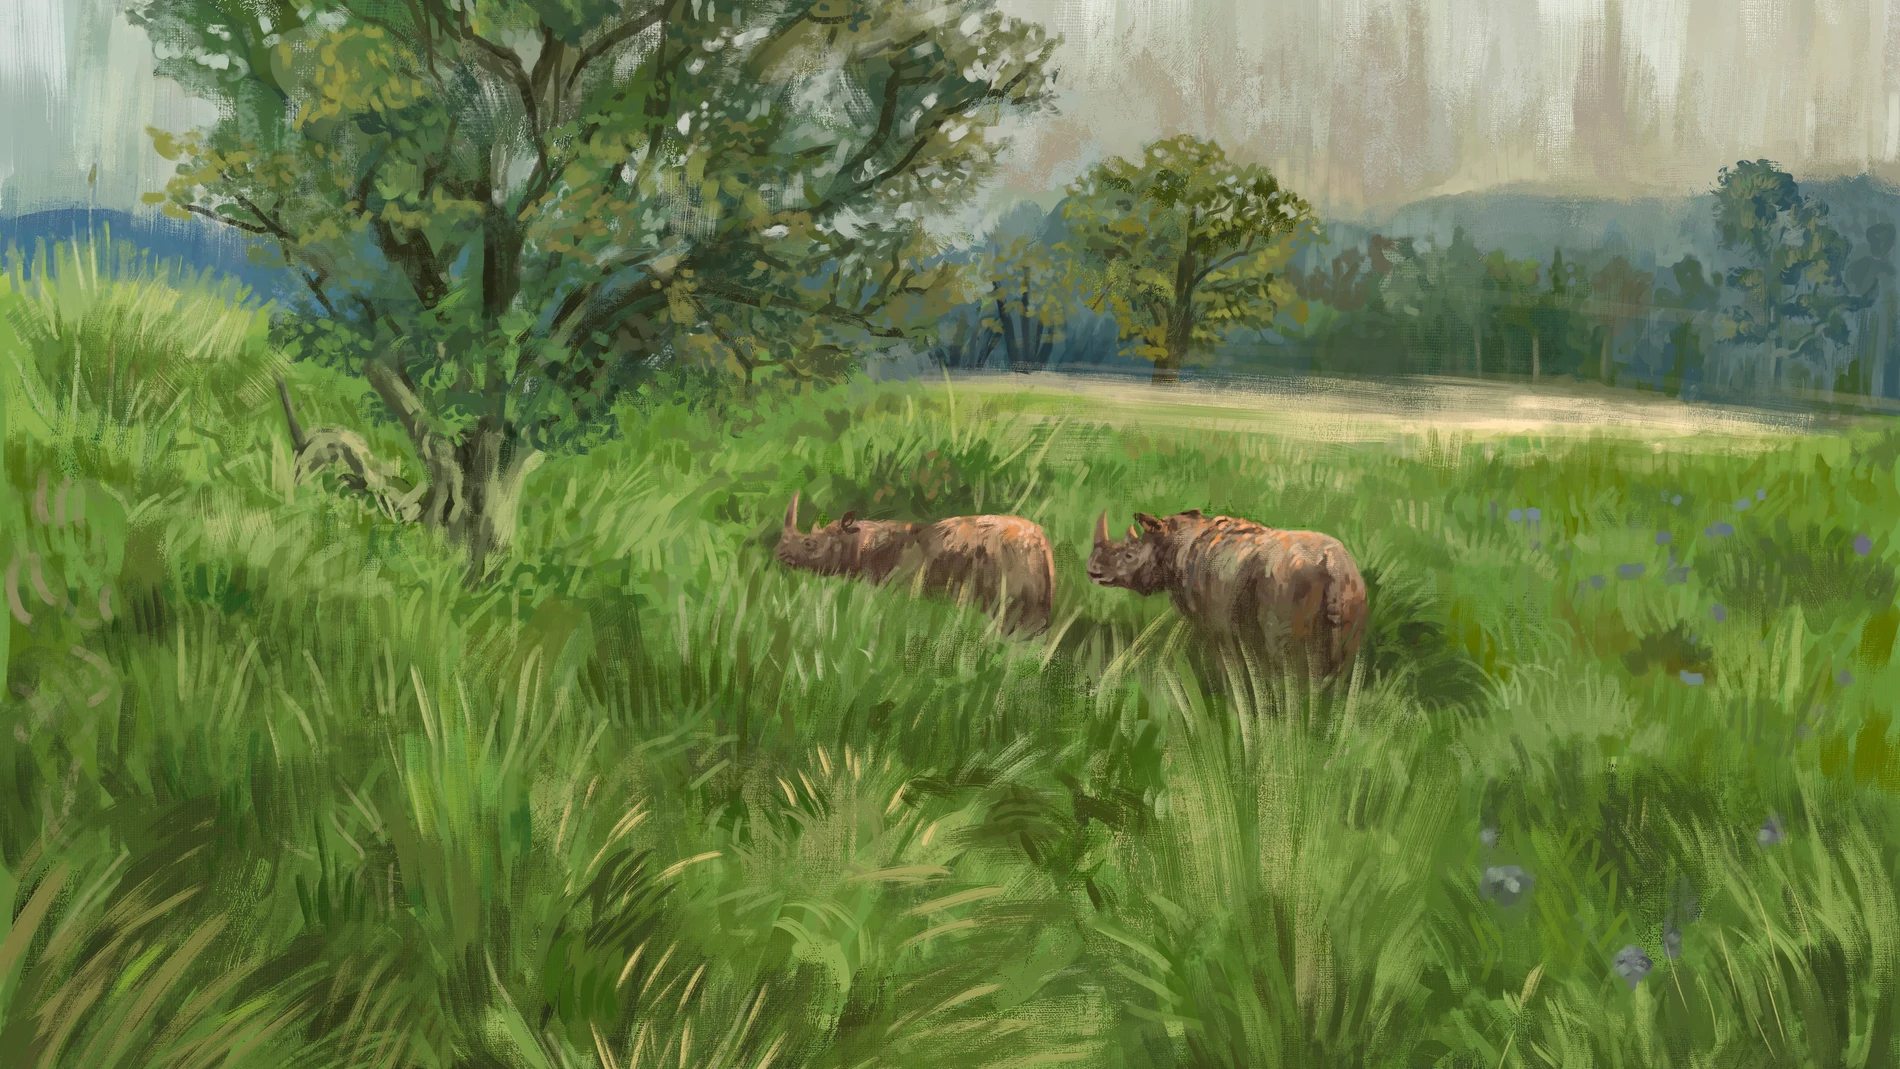 El rinoceronte de Merck era uno de los animales a los que les encantaba alimentarse de hojas de avellano. Este animal vivía en la mayor parte de Europa y probablemente desempeñaba una función importante para mantener los paisajes abiertos y variados.